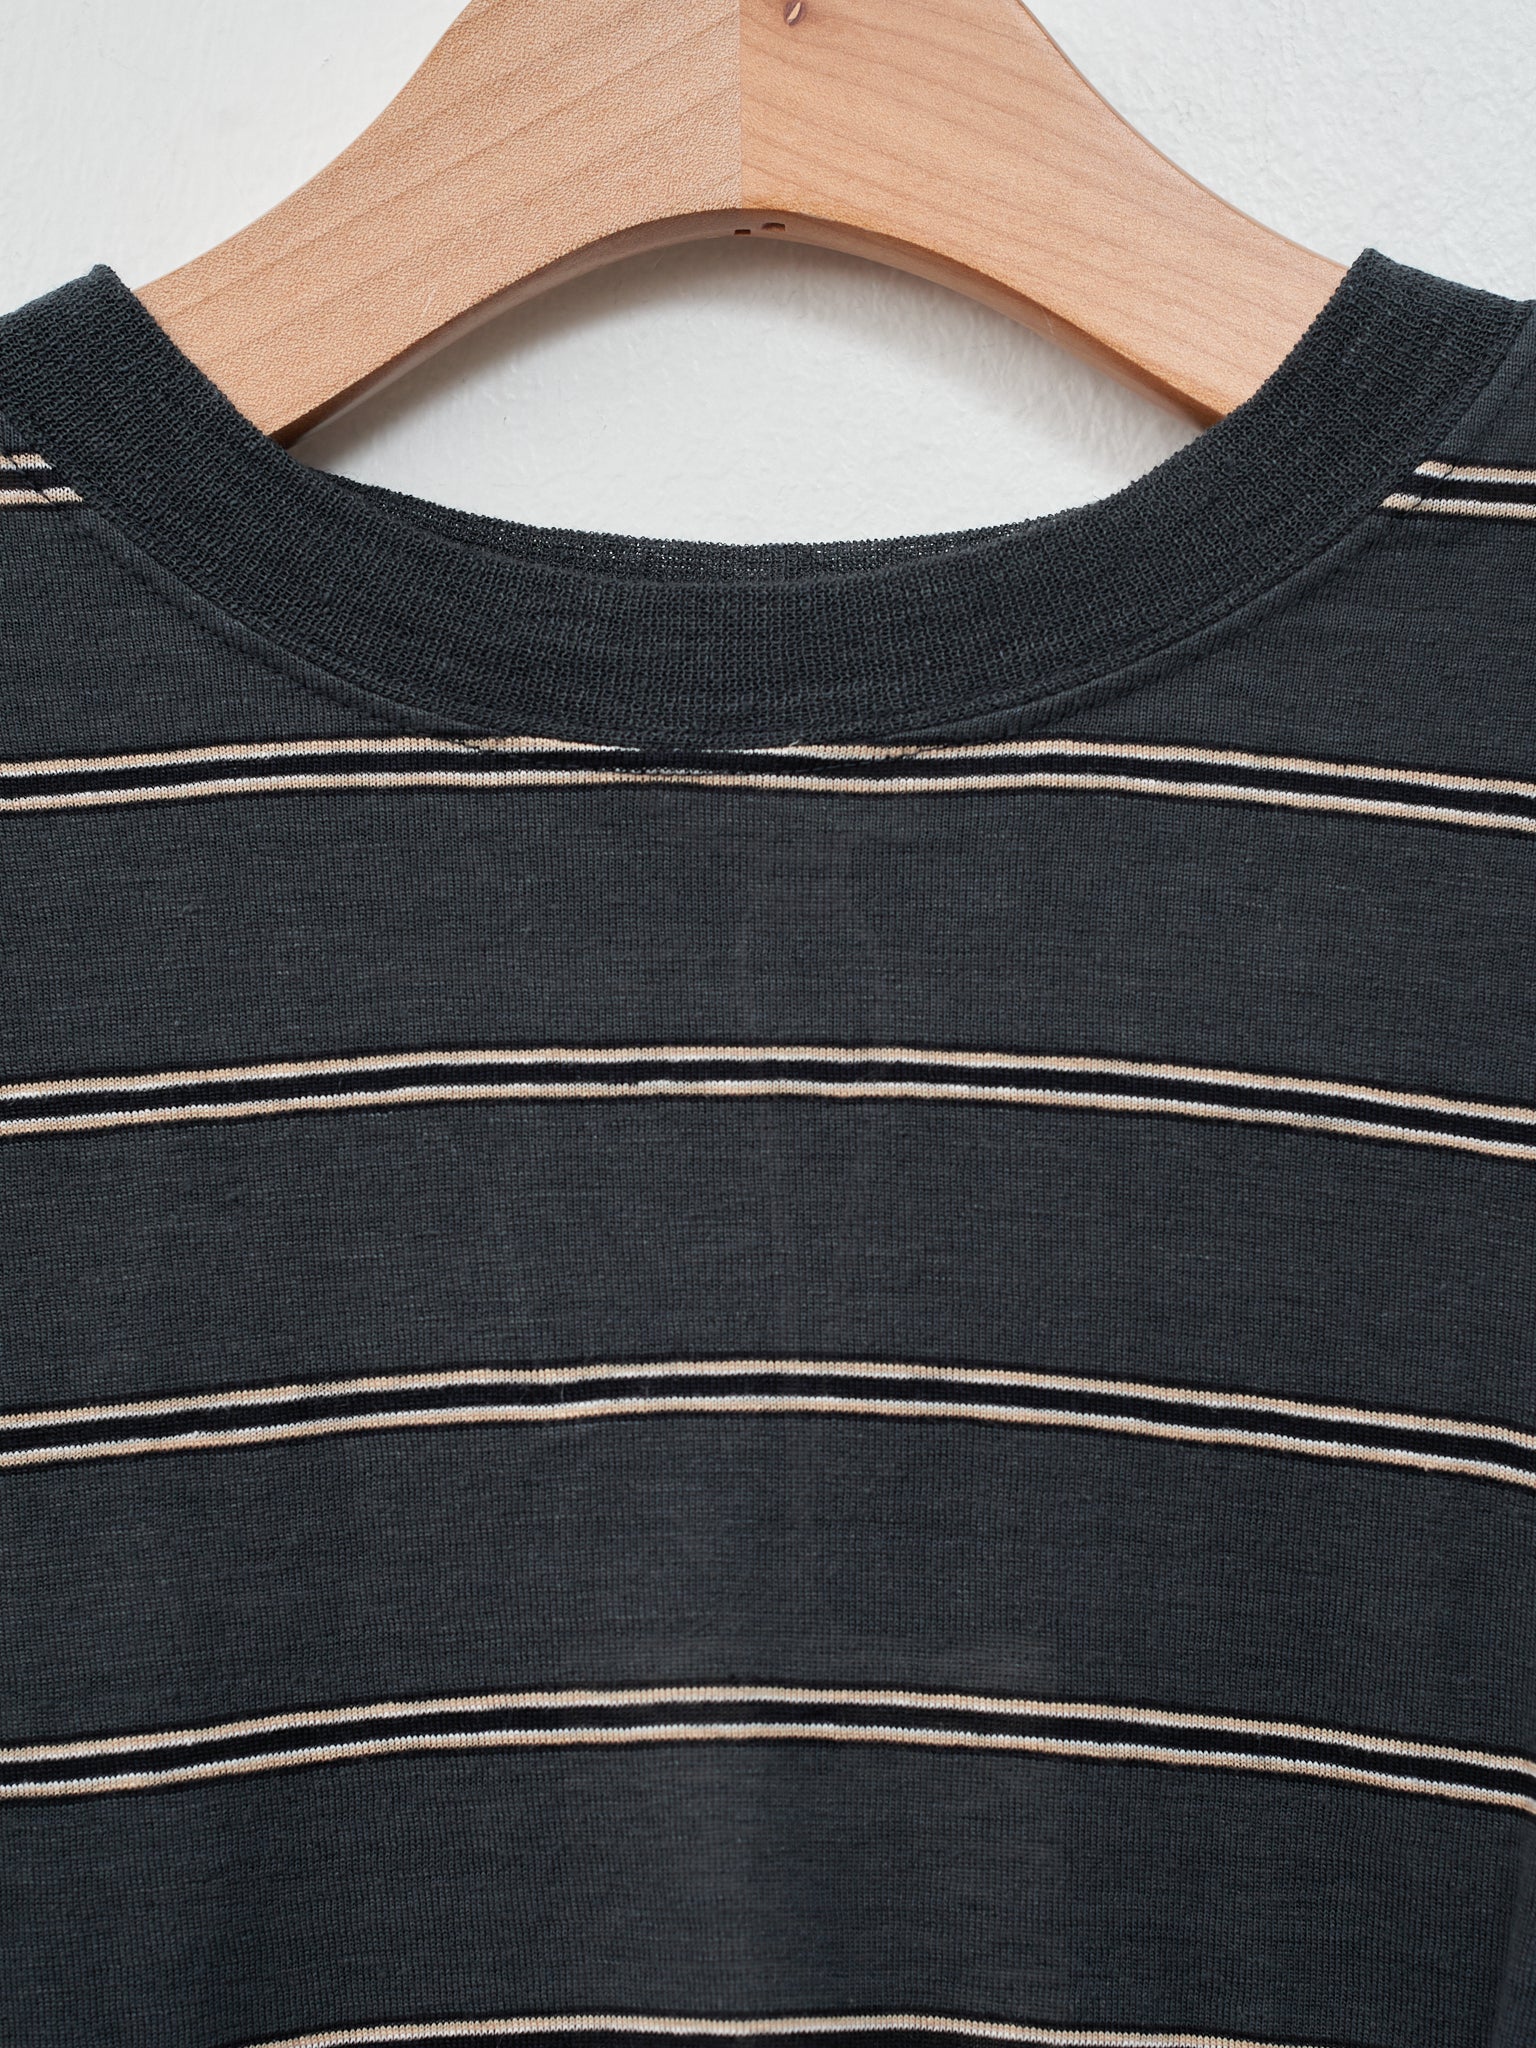 Namu Shop - Unfil Hemp Striped Jersey Cropped Tee - Dark Blue Stripe